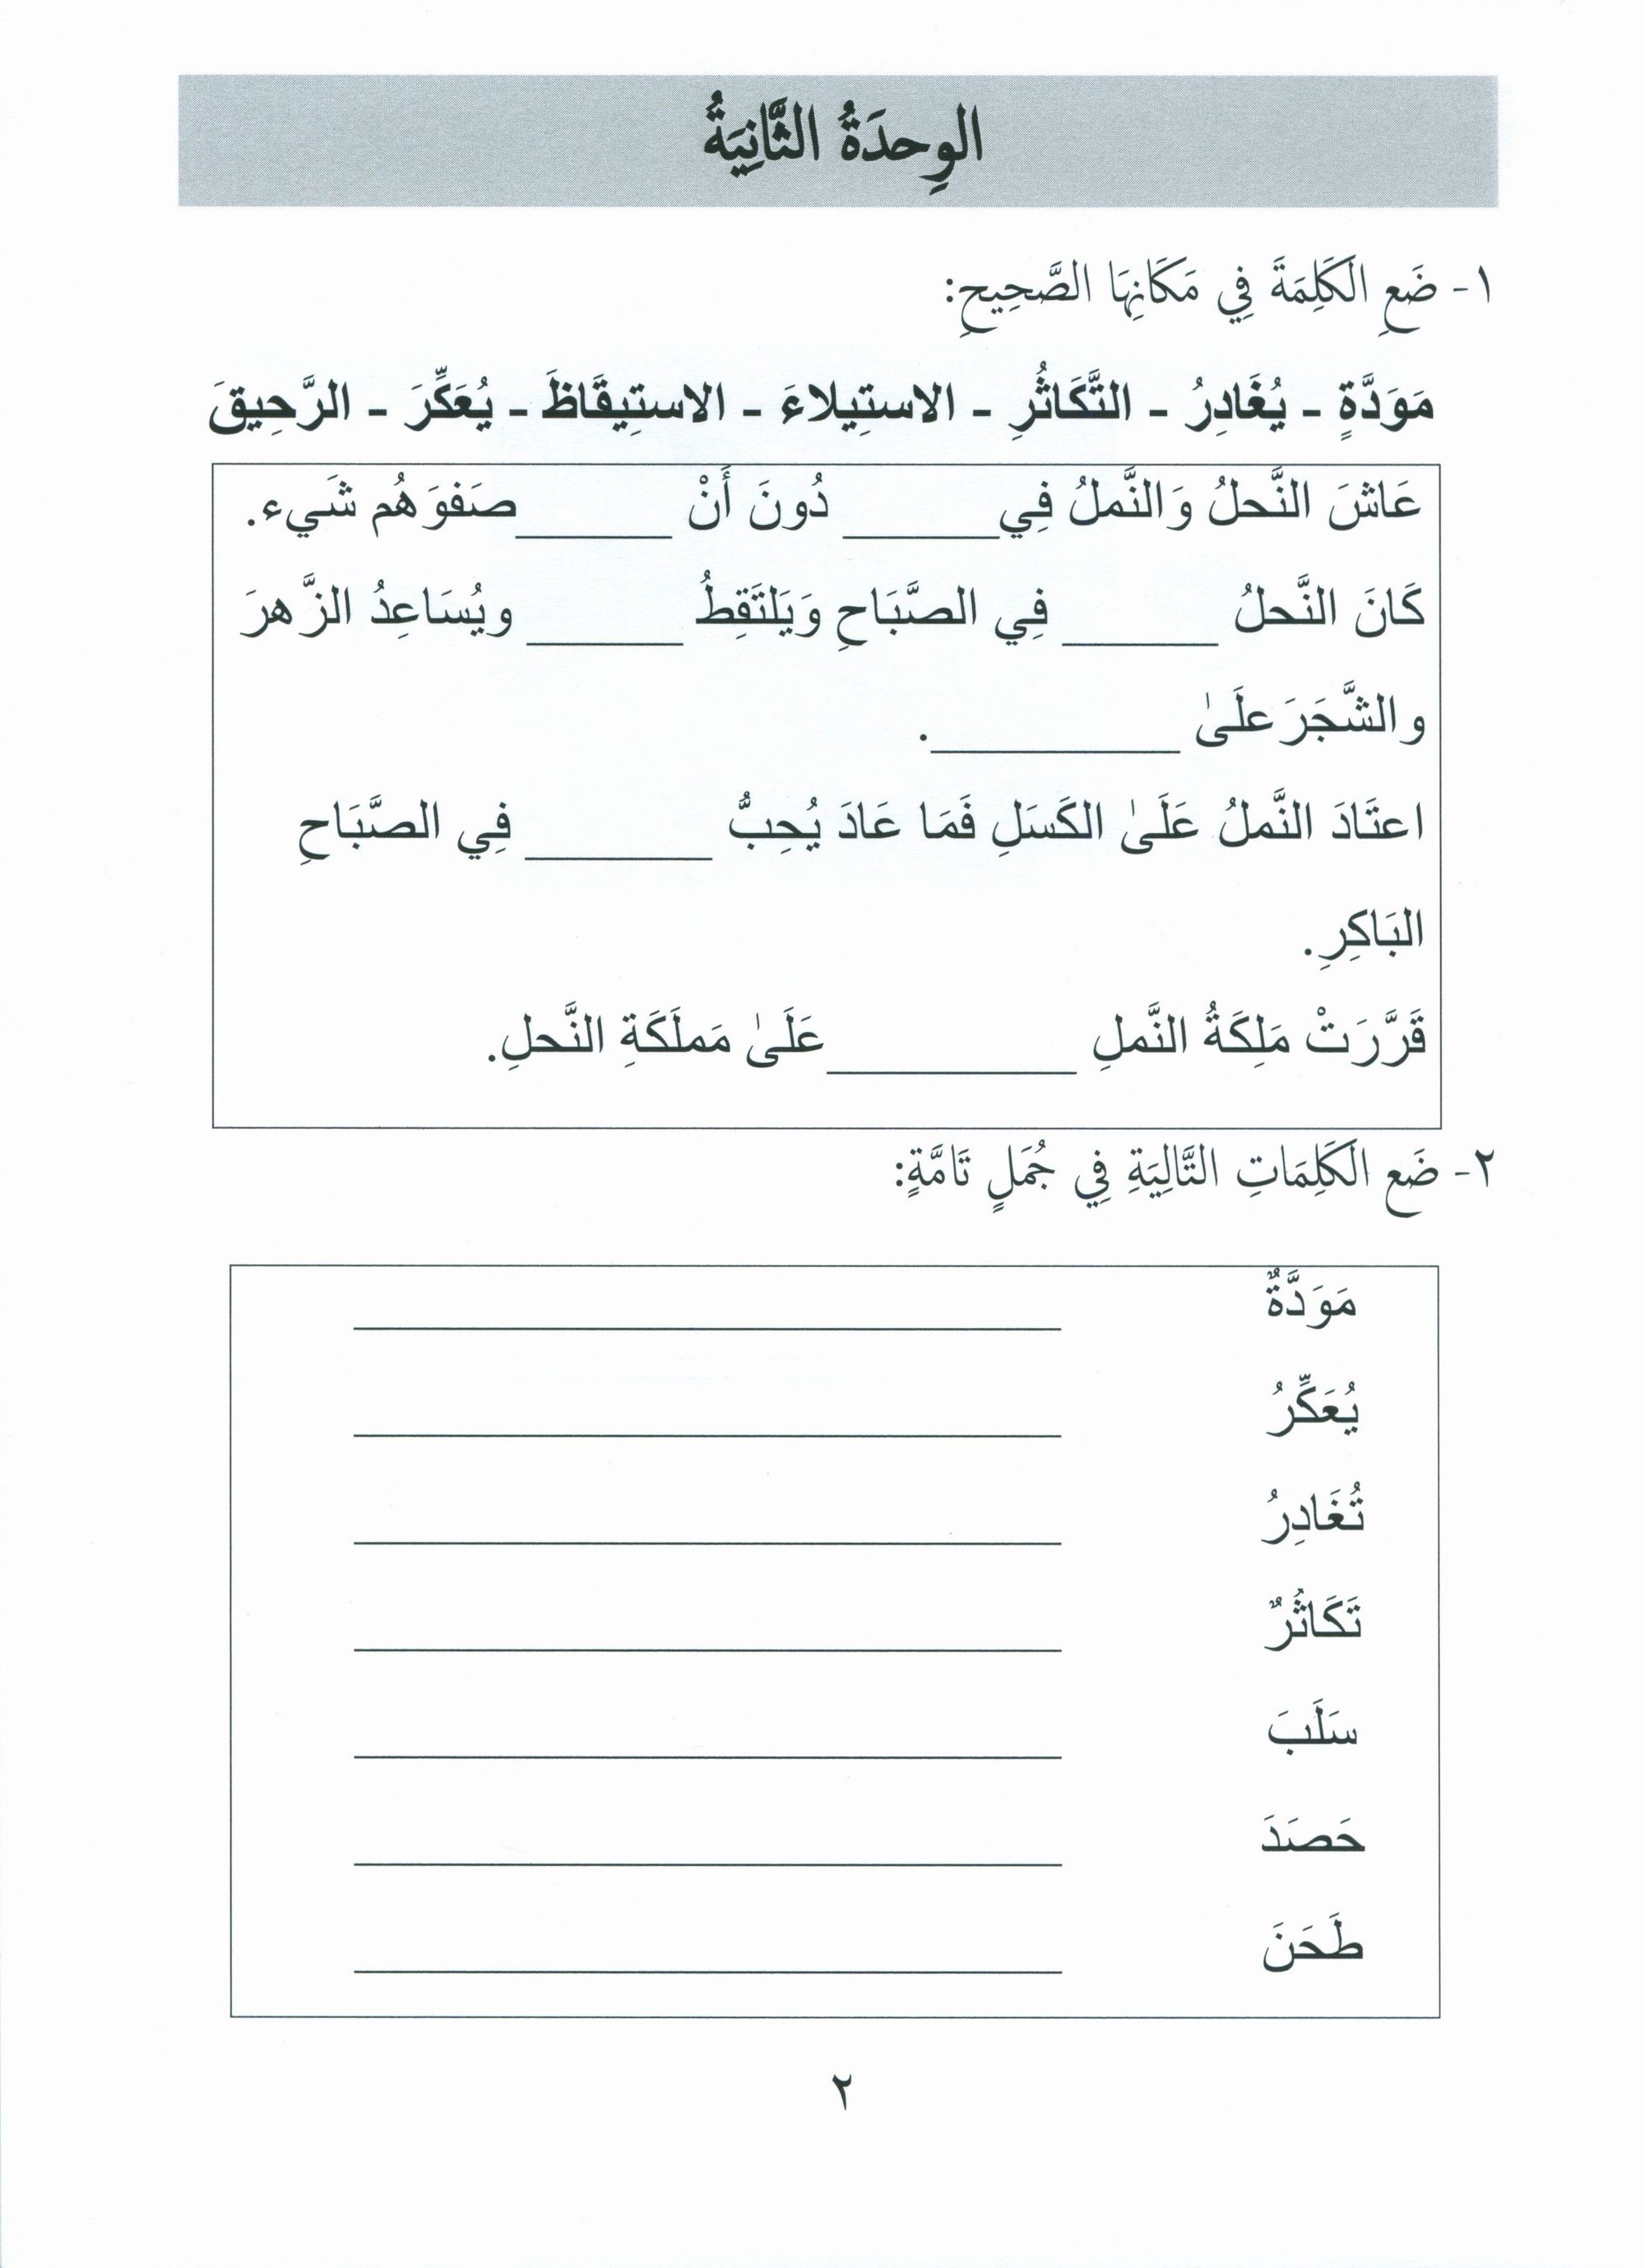 Gems of Arabic Assessment Level 5